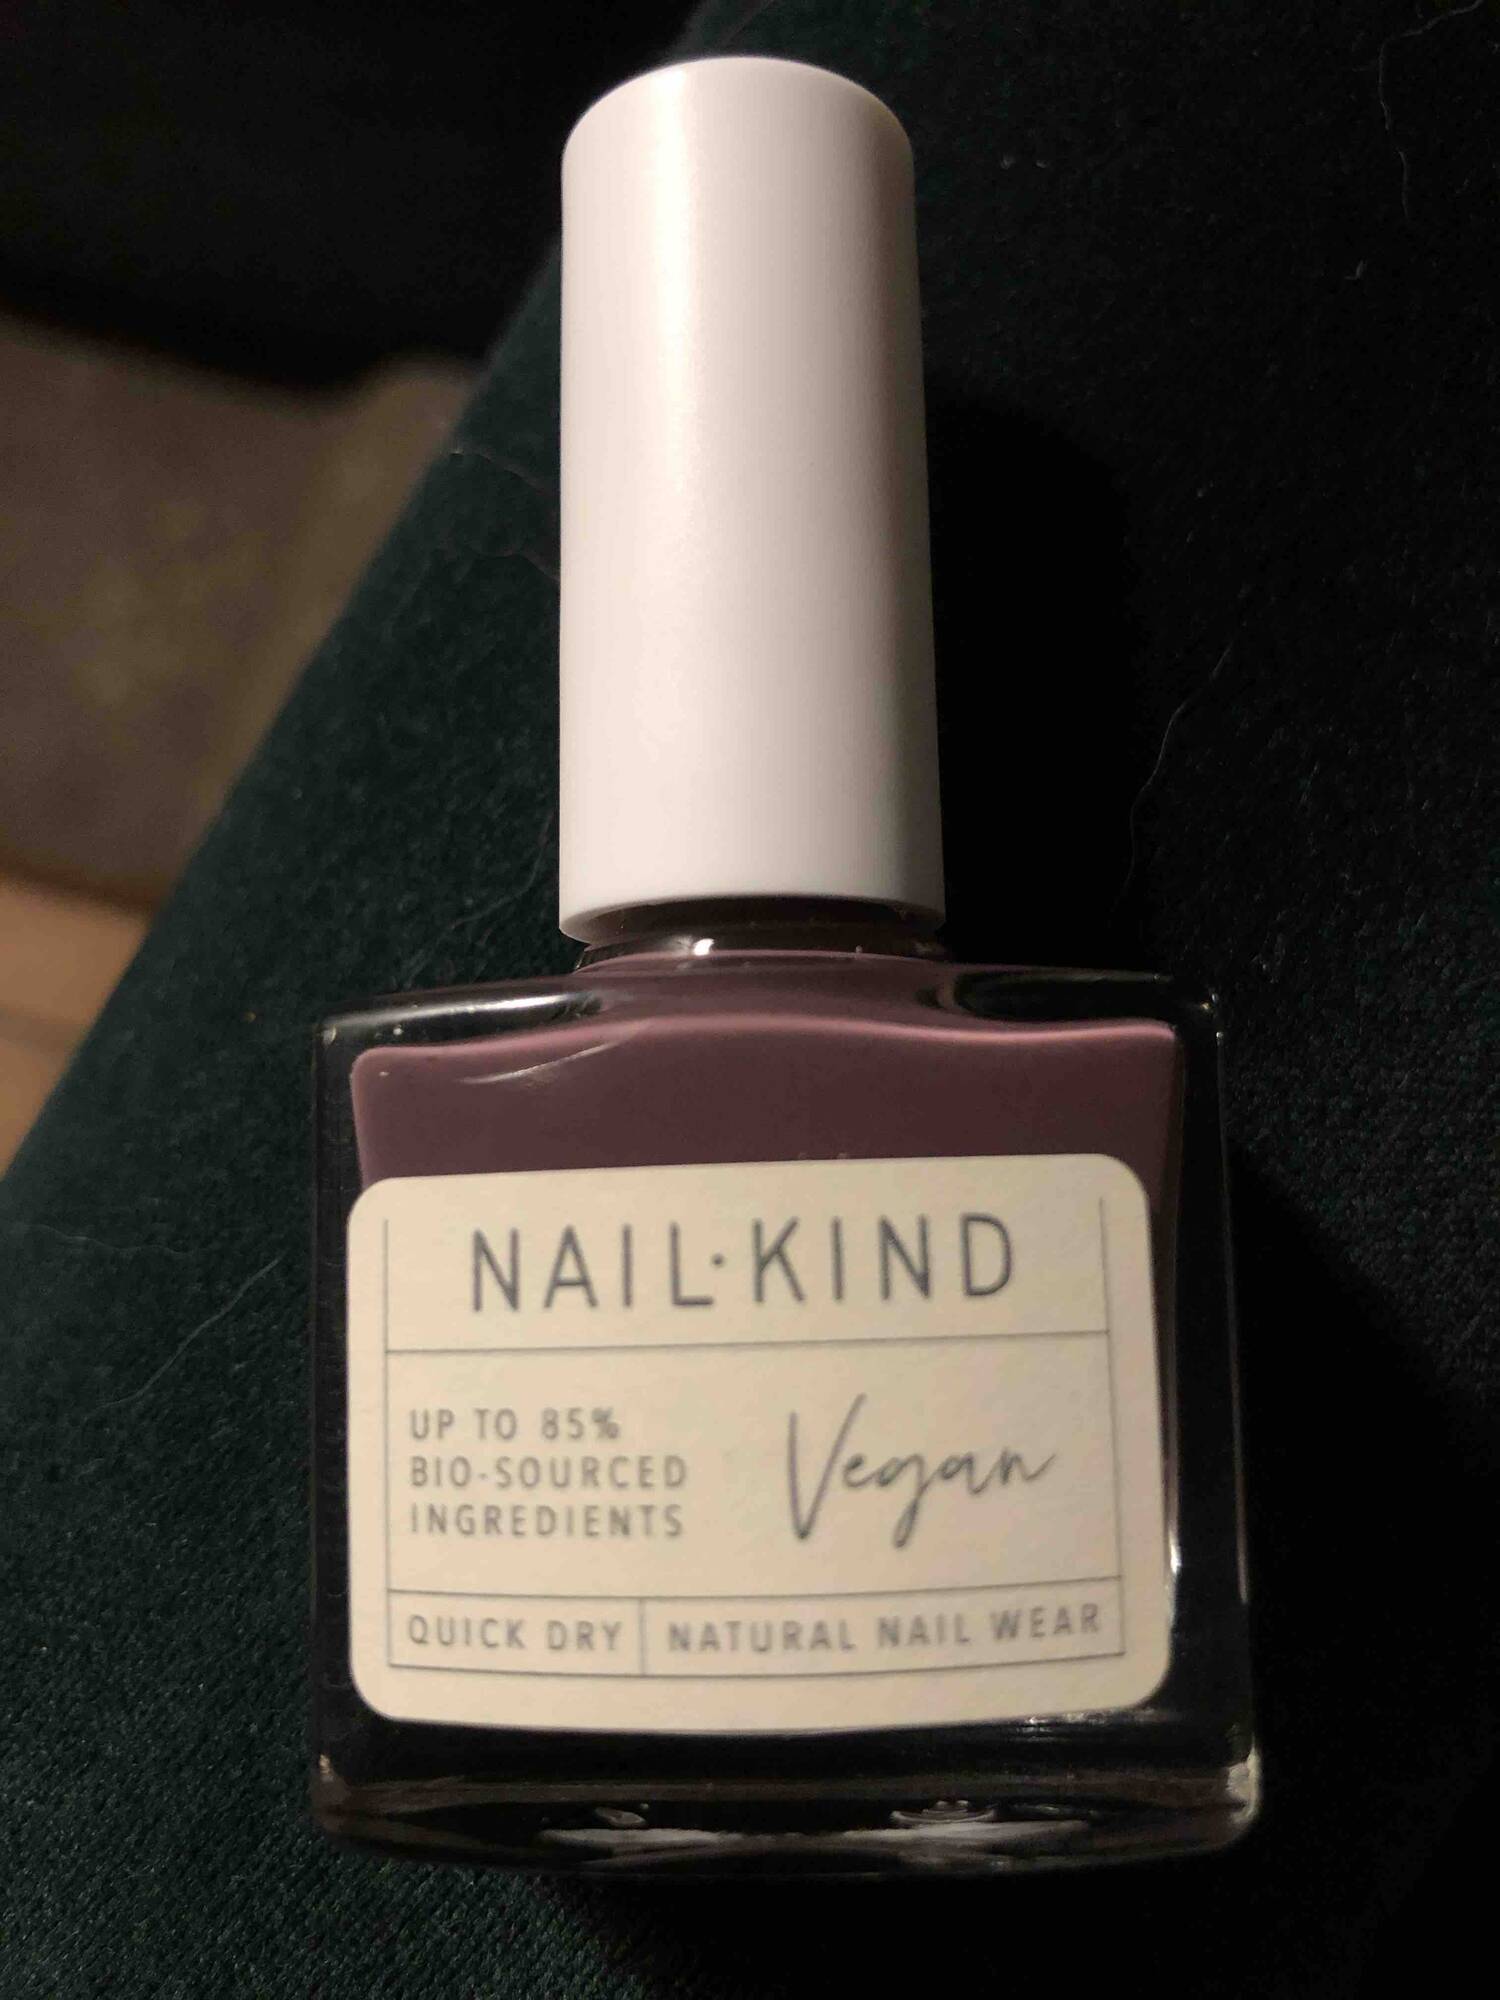 NAIL KIND - Vegan - Quick dry natural nail wear